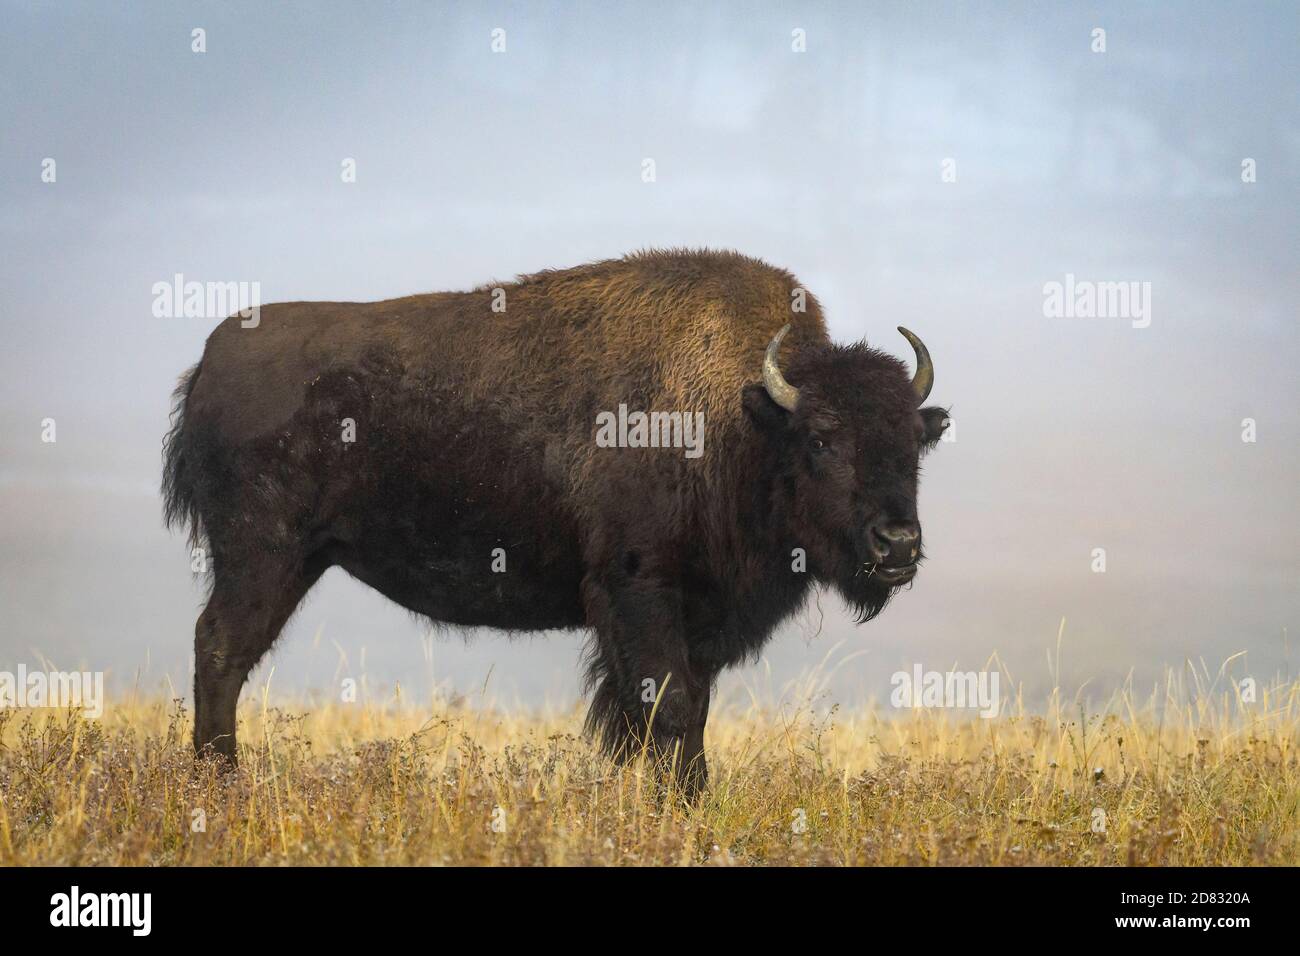 Le bison dans le brouillard. Appartements Fontaine, le Parc National de Yellowstone, Wyoming. Banque D'Images